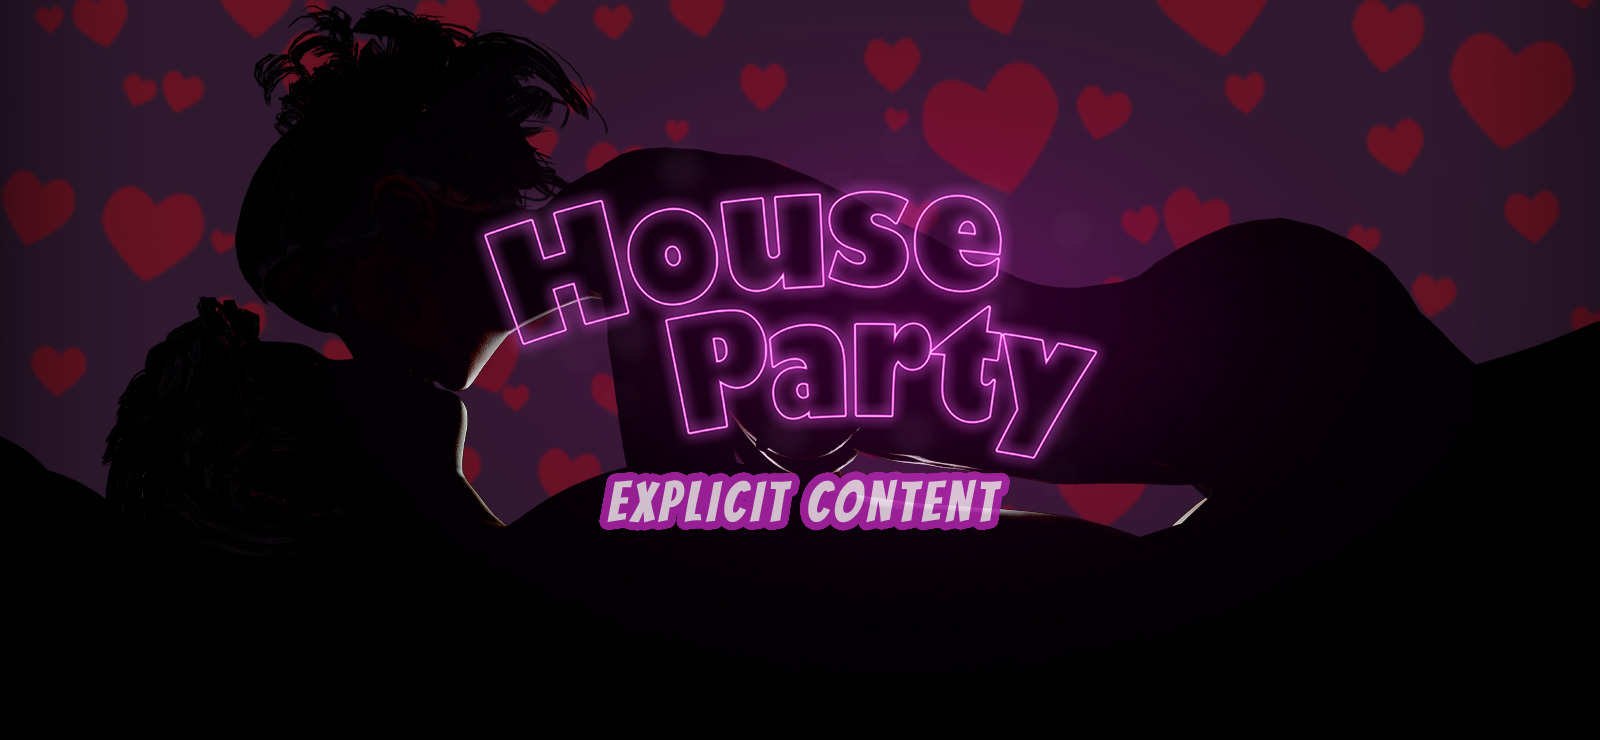 House party explicit content dlc